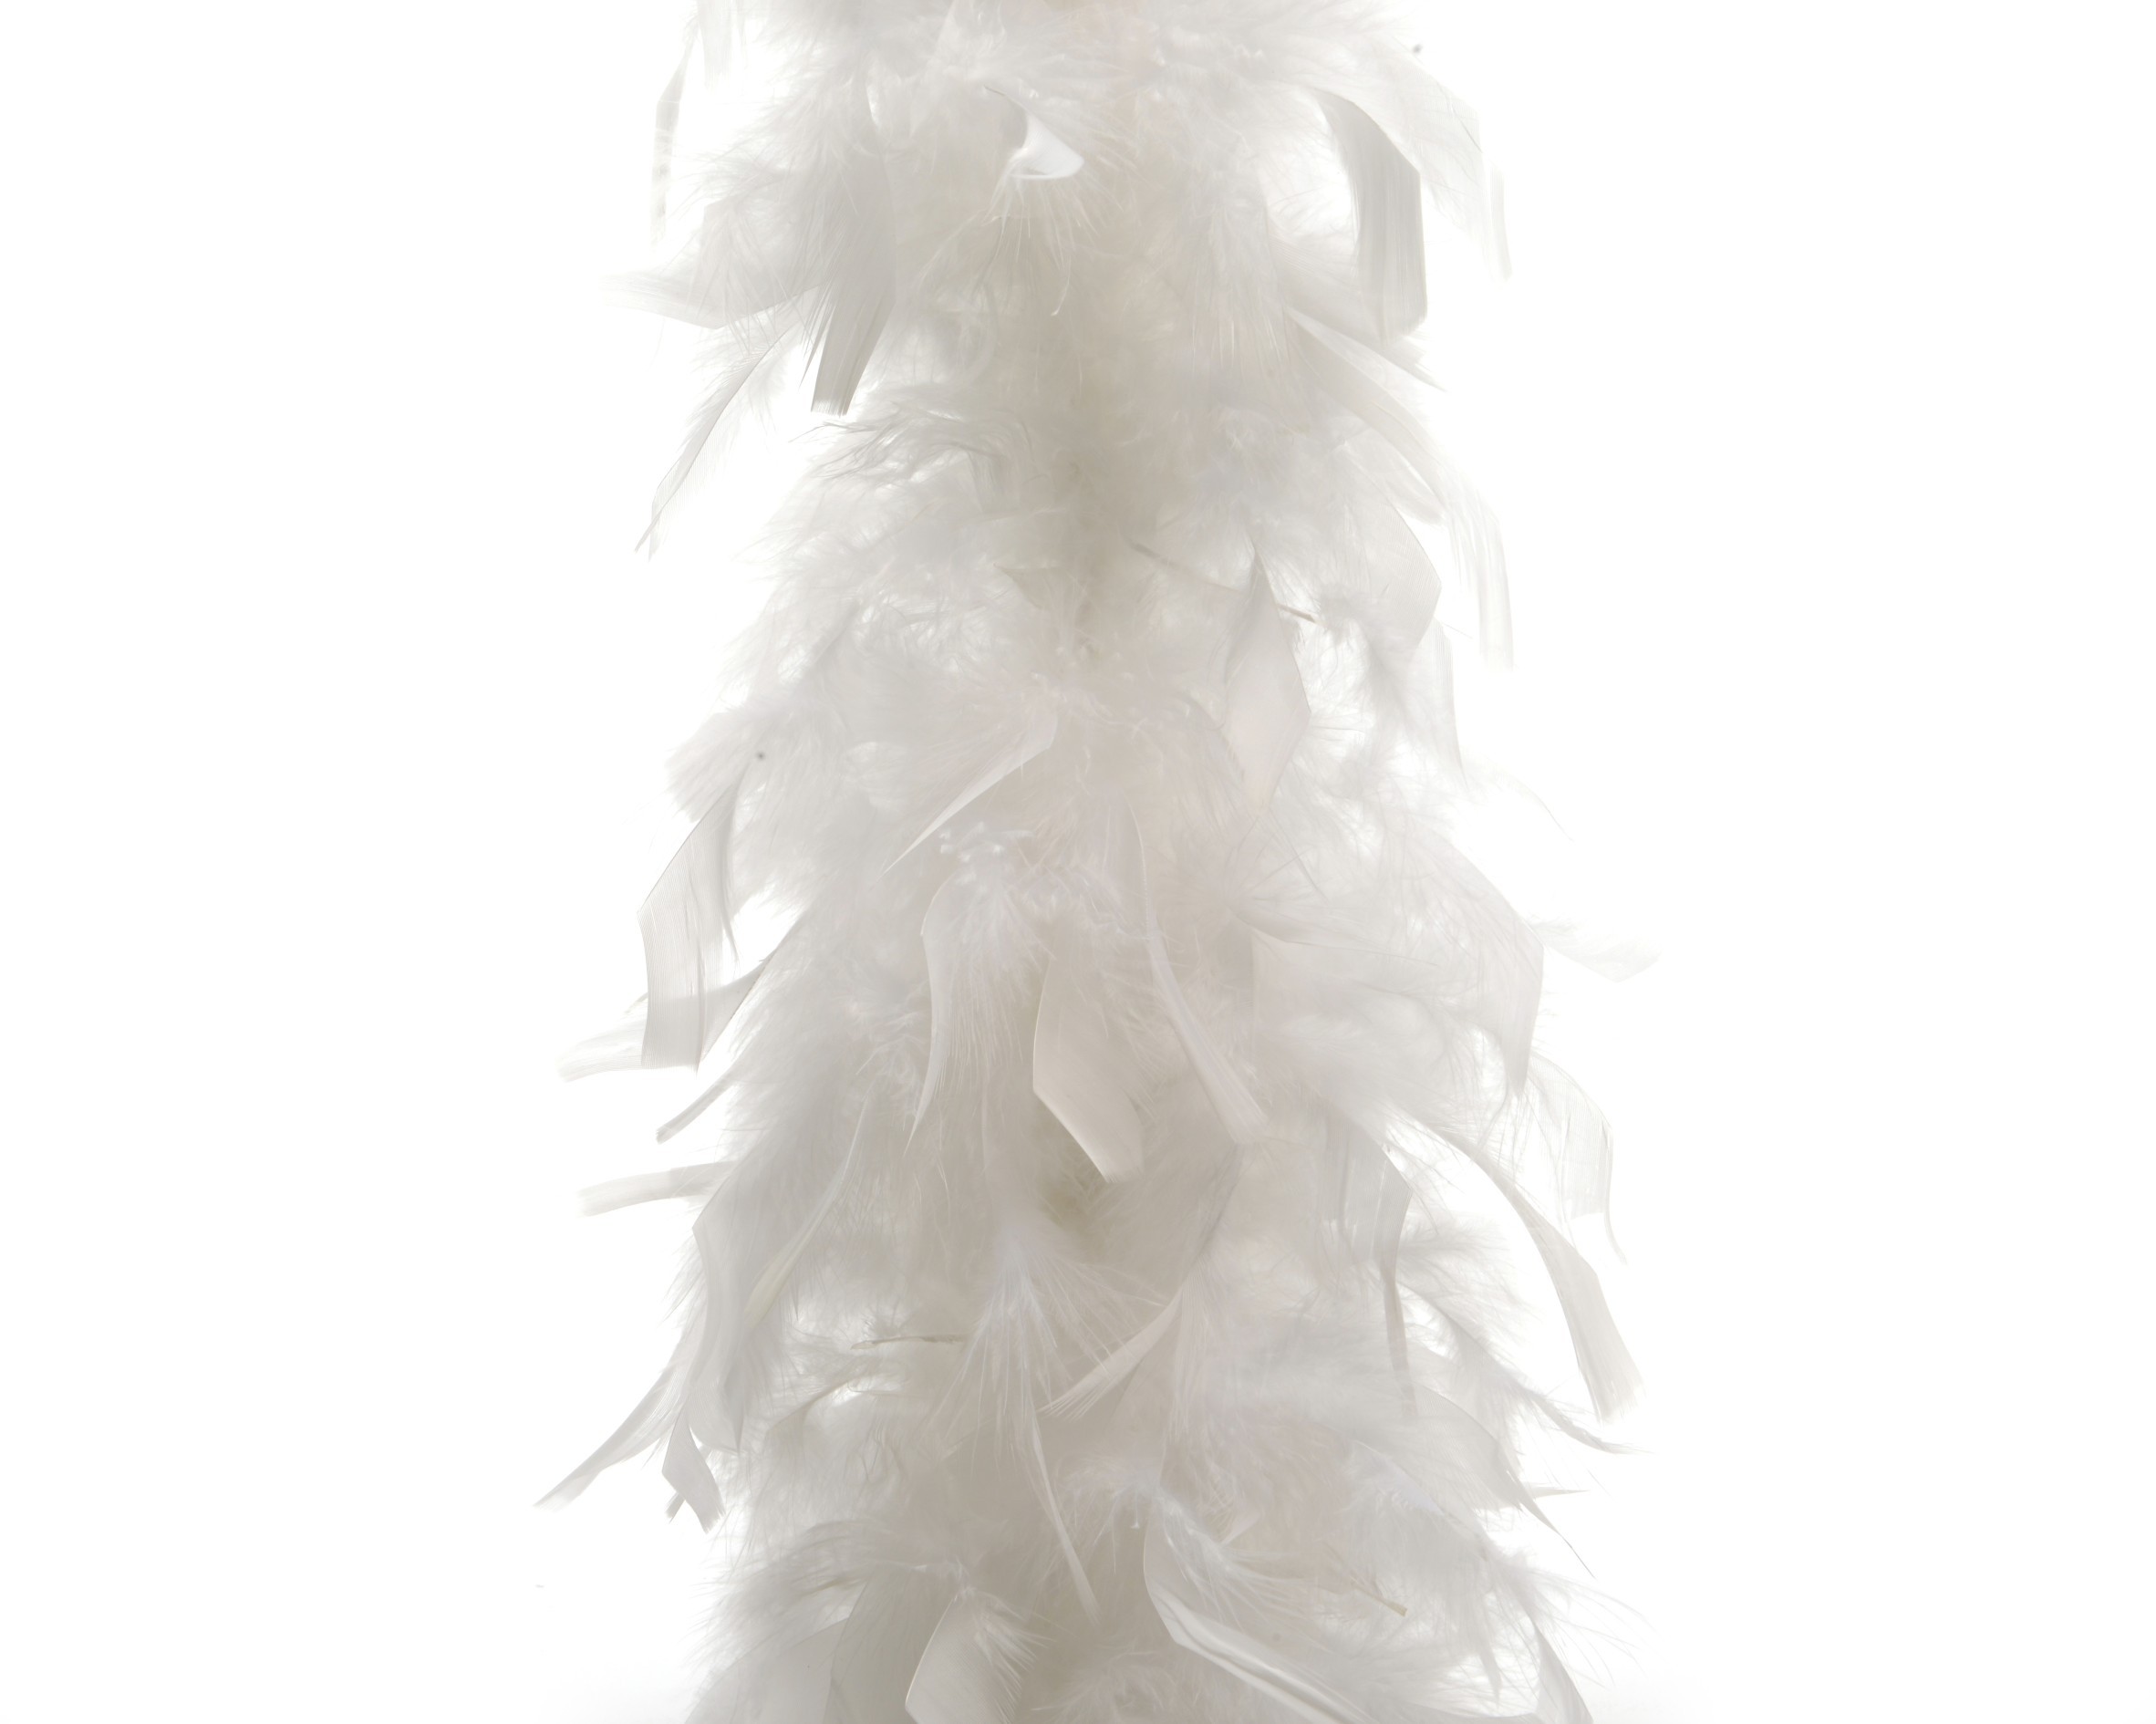 Guirlande de Noël intérieure en plume blanche pour sapin 184 cm